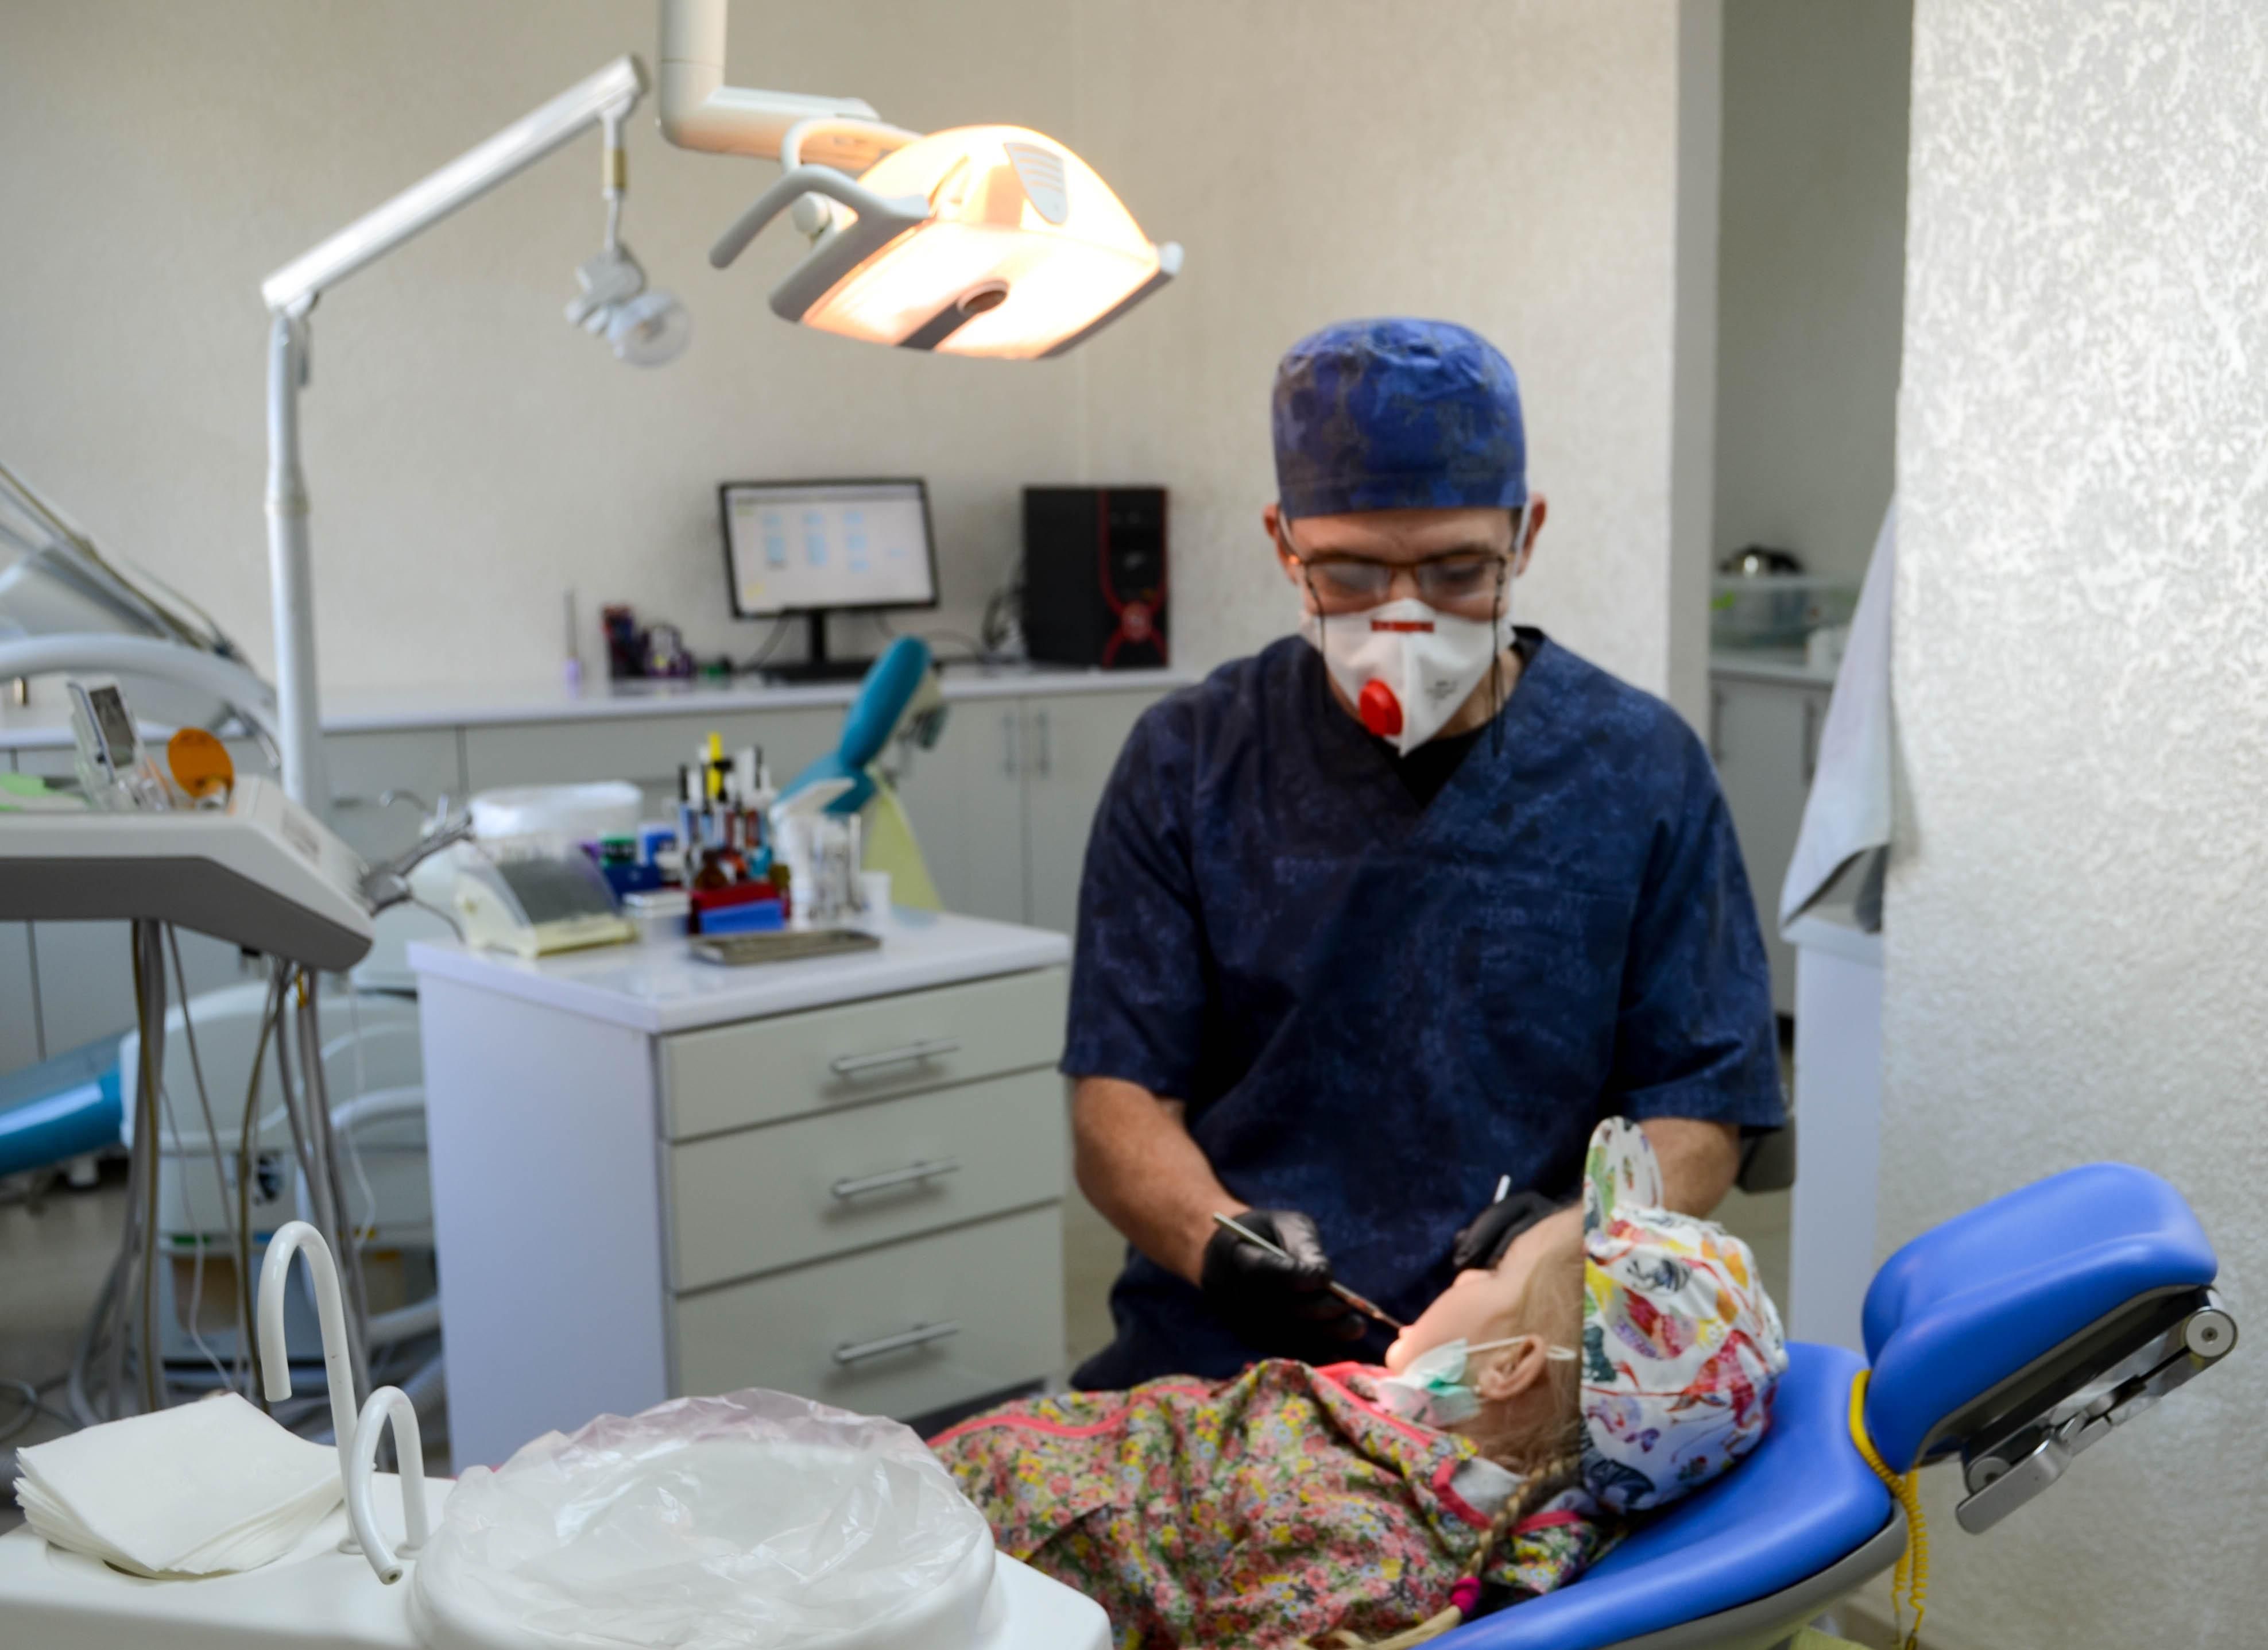 Як працюватимуть стоматології під час карантину: нові правила від МОЗ